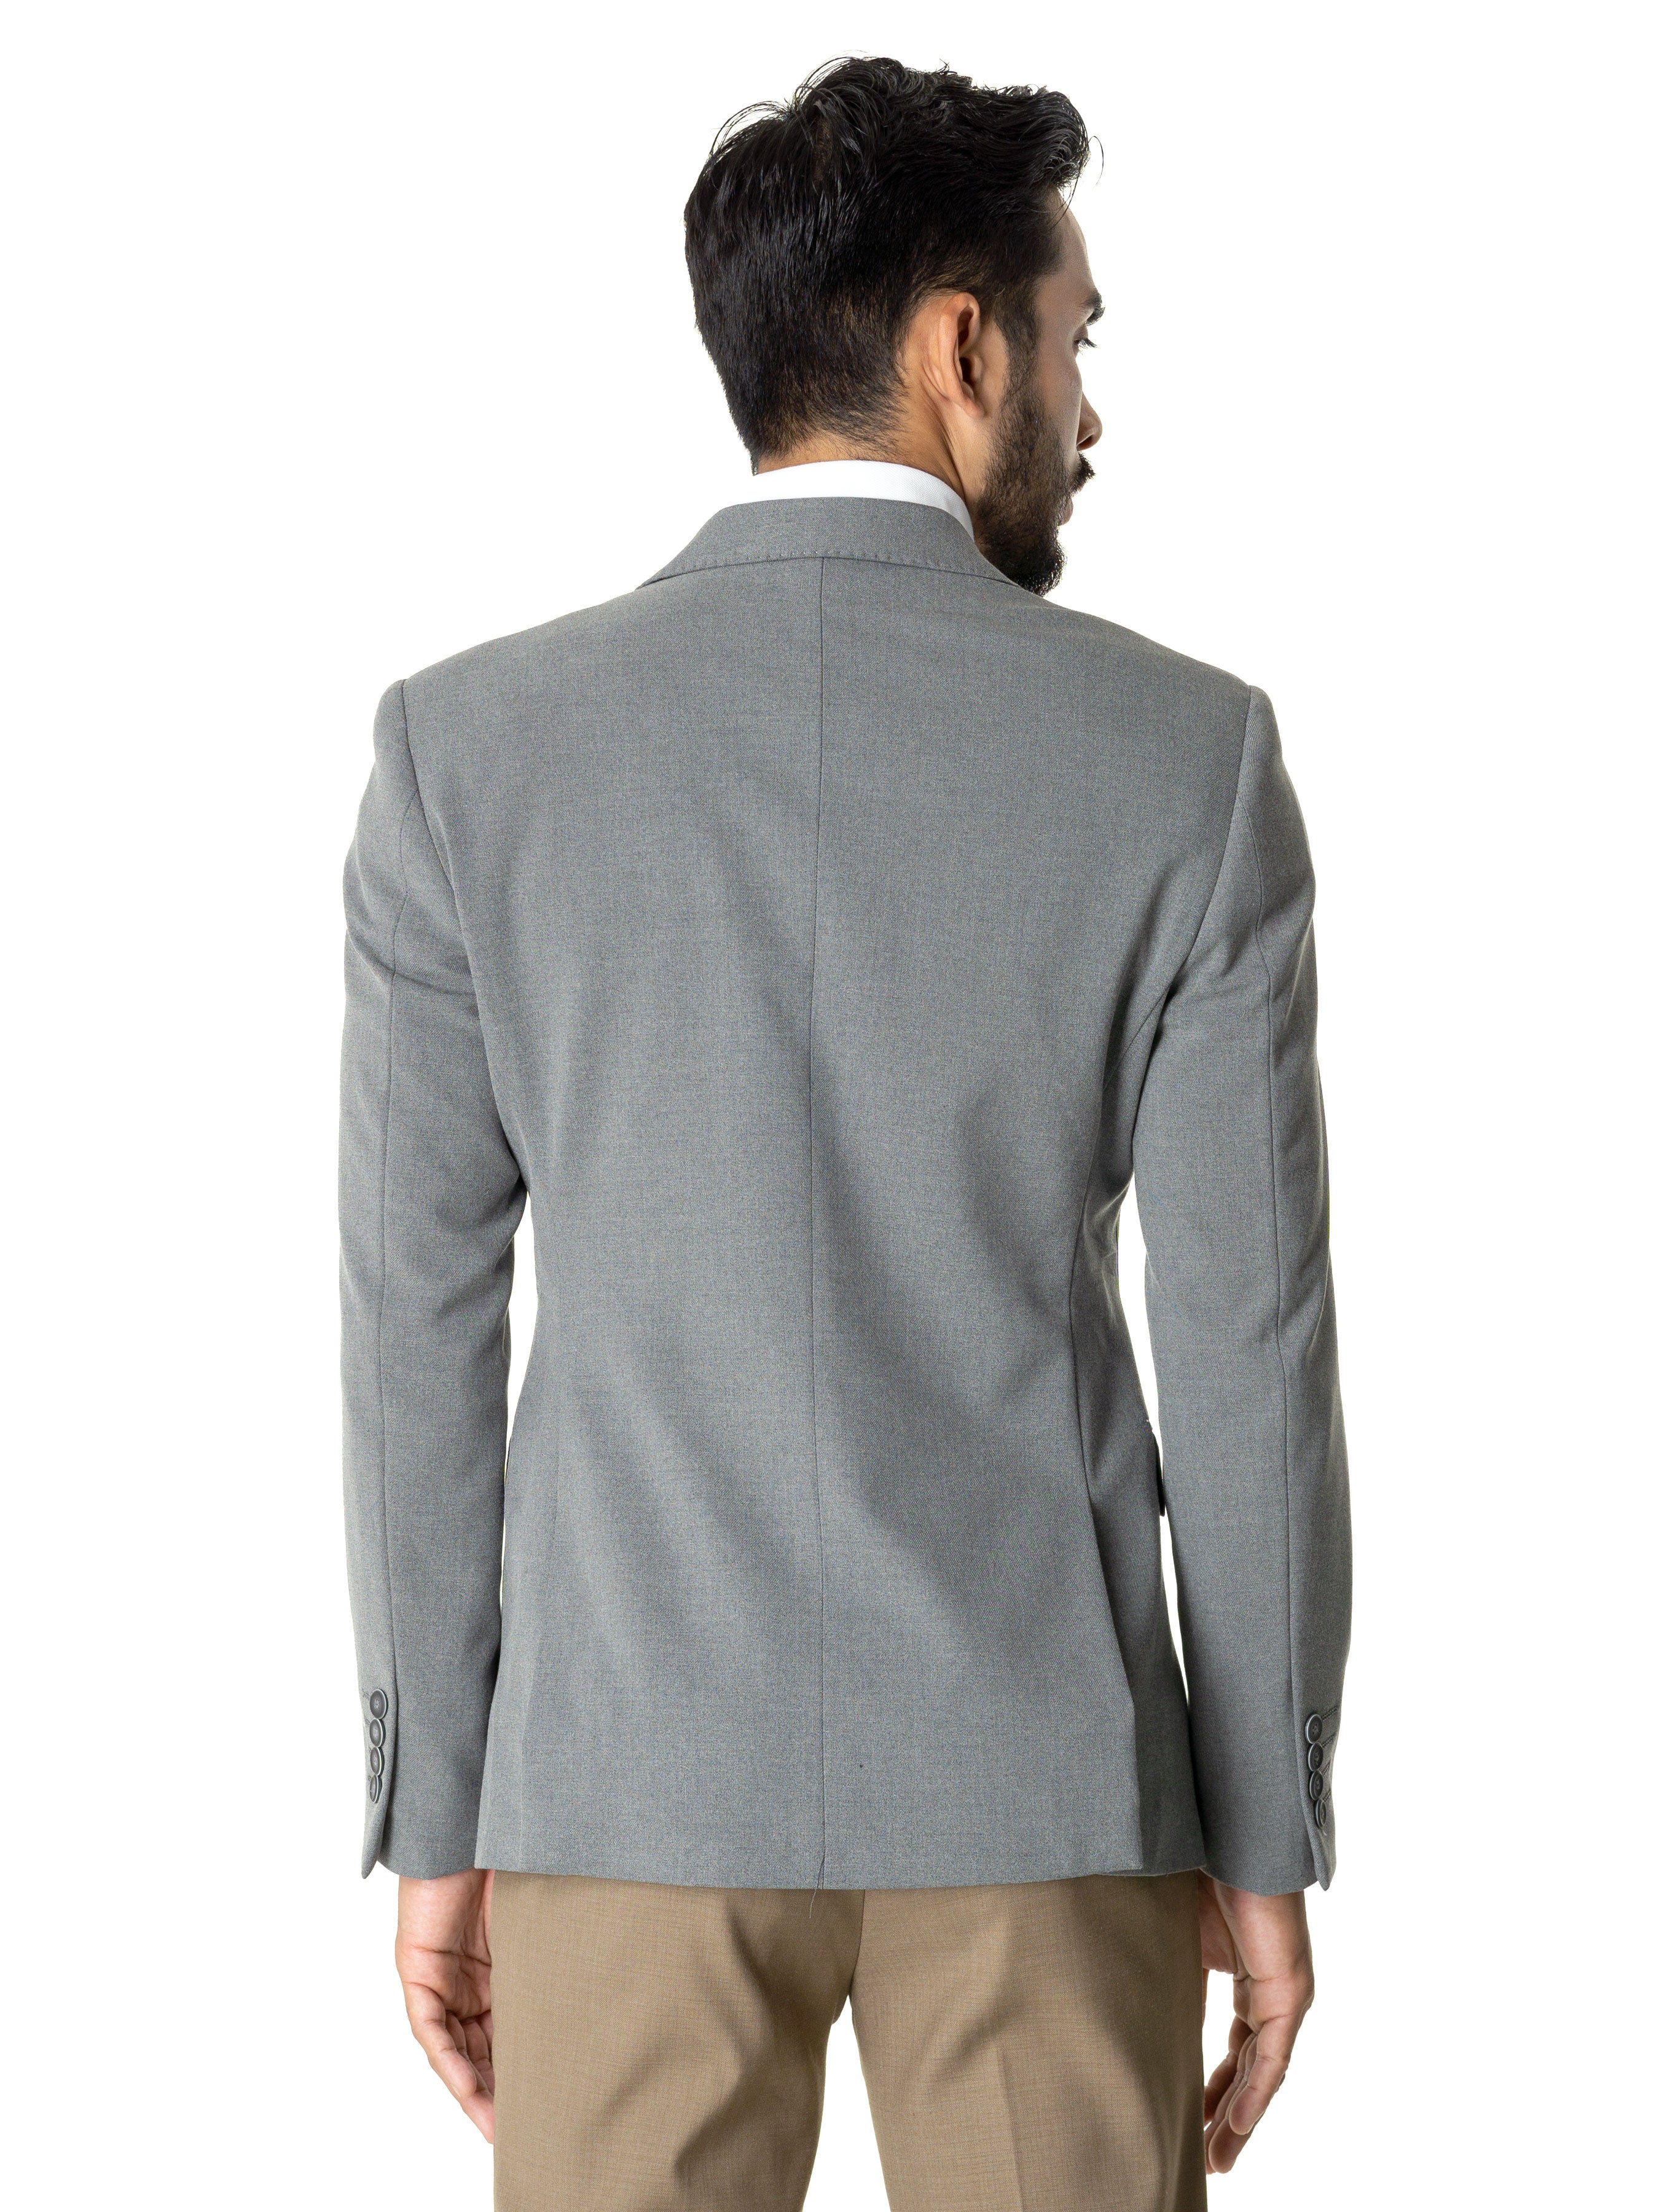 Single Breasted Suit Blazer - Grey Plain (Peak Lapel) - Zeve Shoes